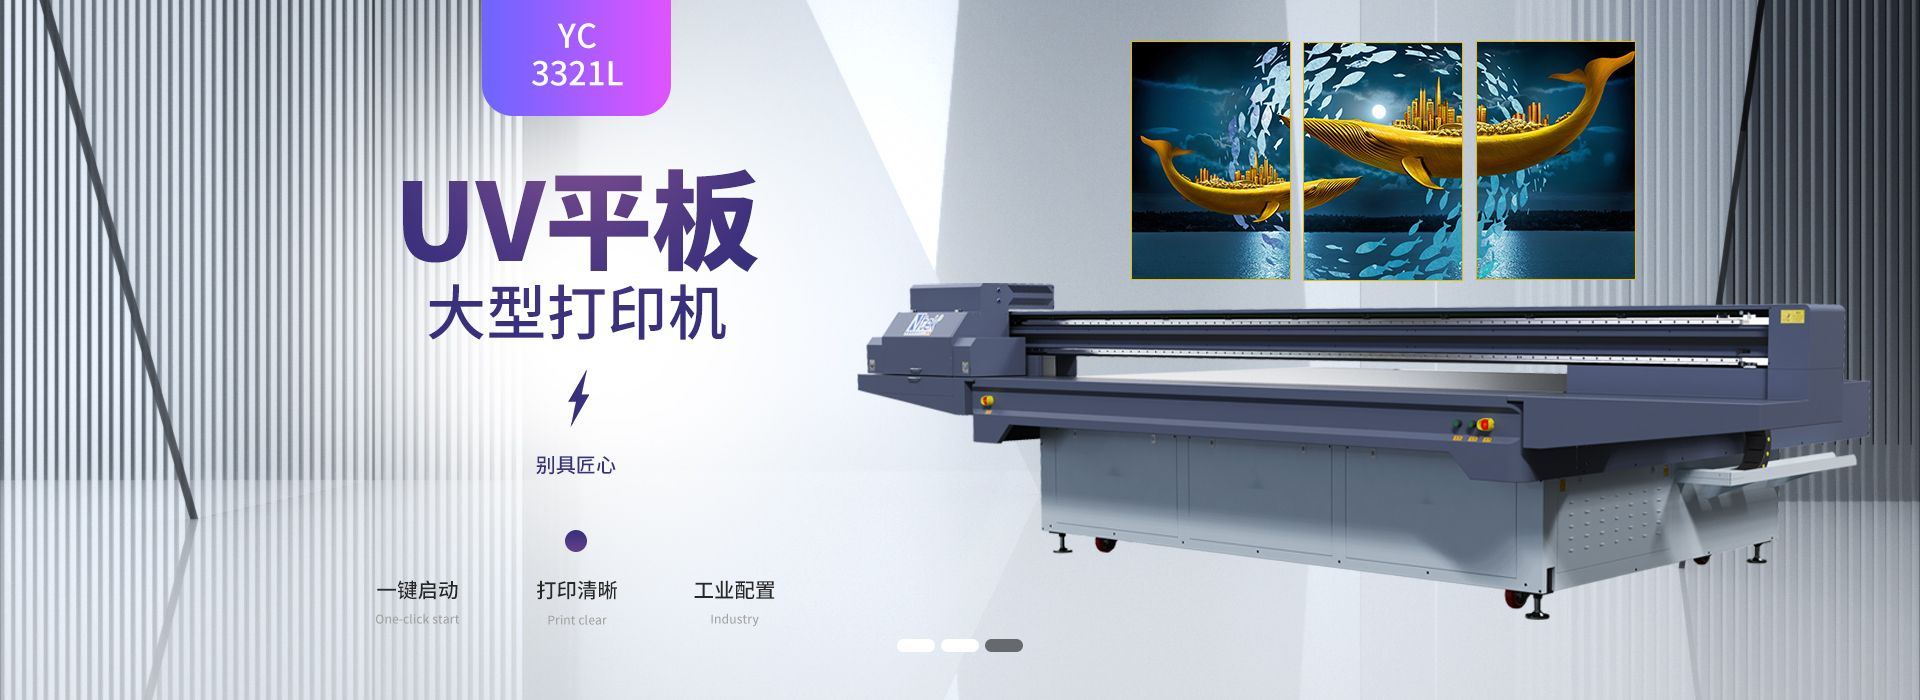 广告UV平板打印机